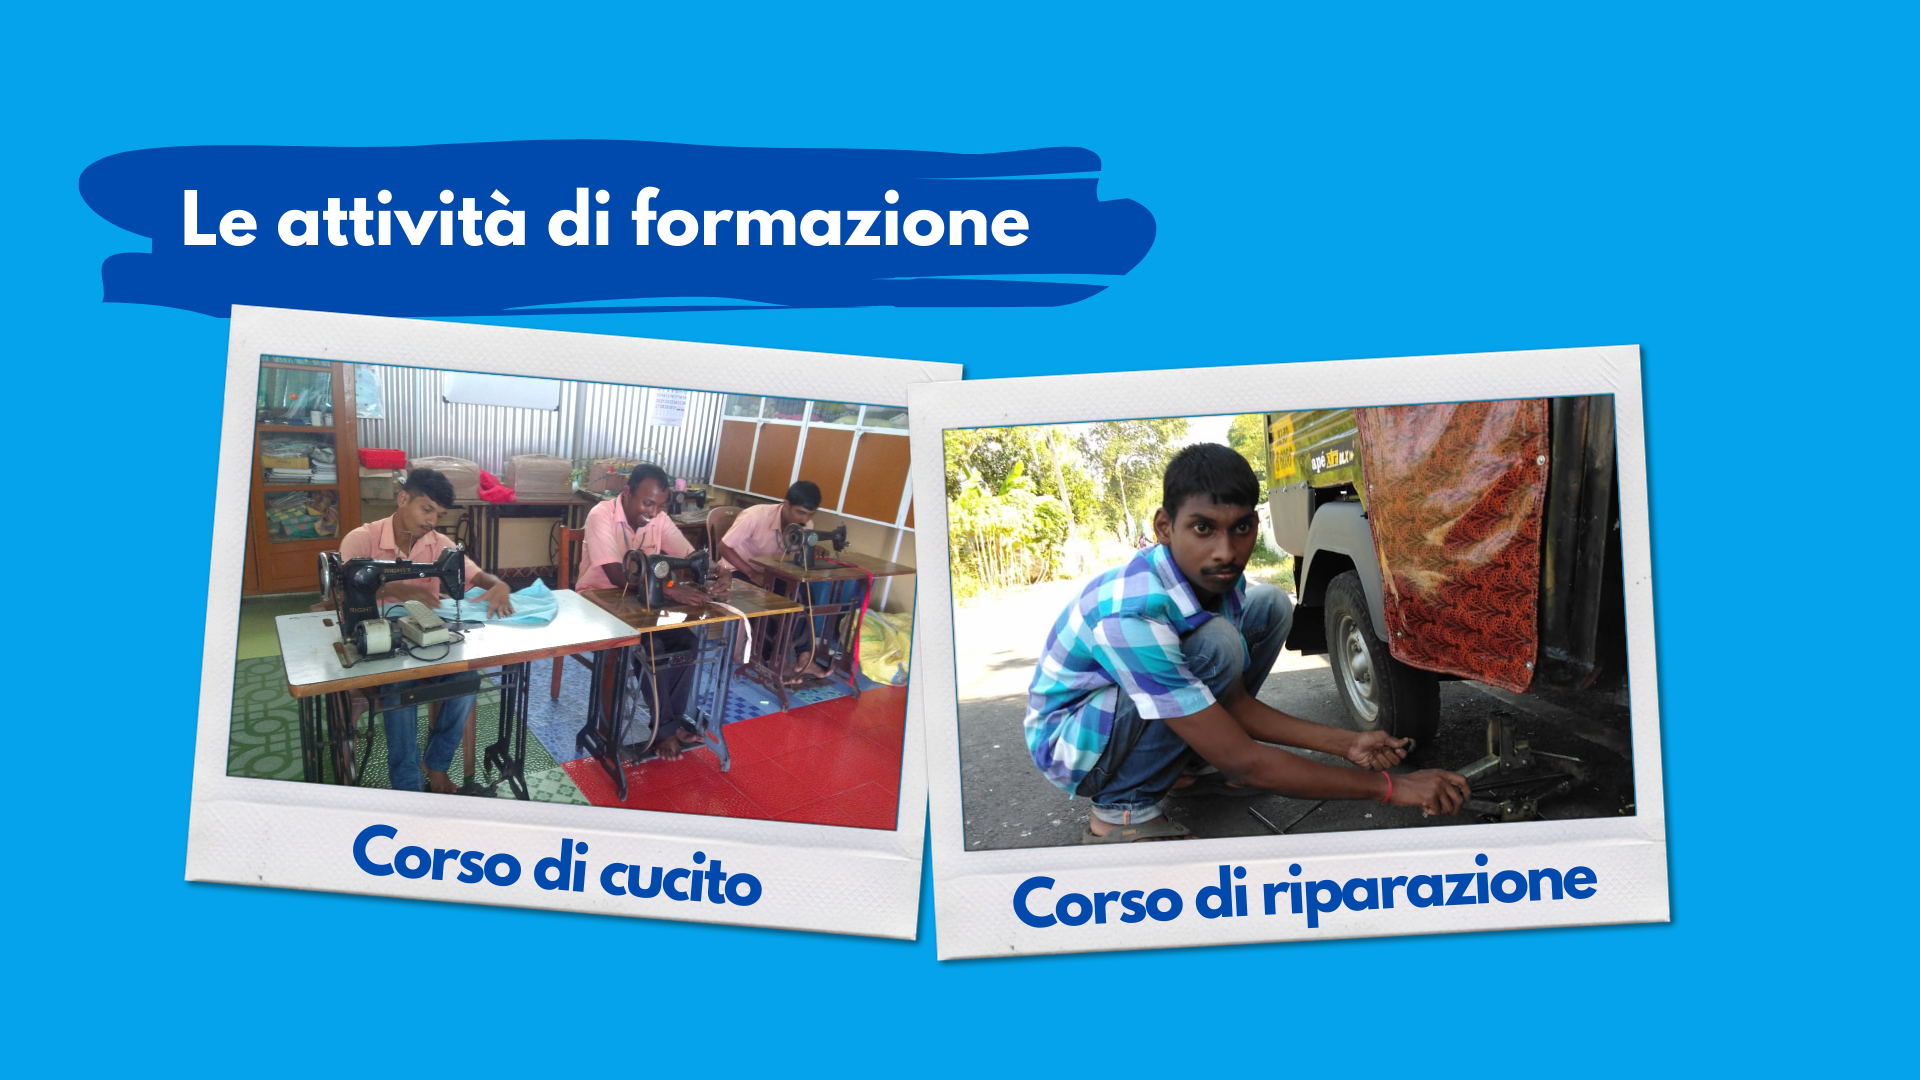 30 Better - 30 Buoni motivi per donare-Fondazione Cottolengo Onlus